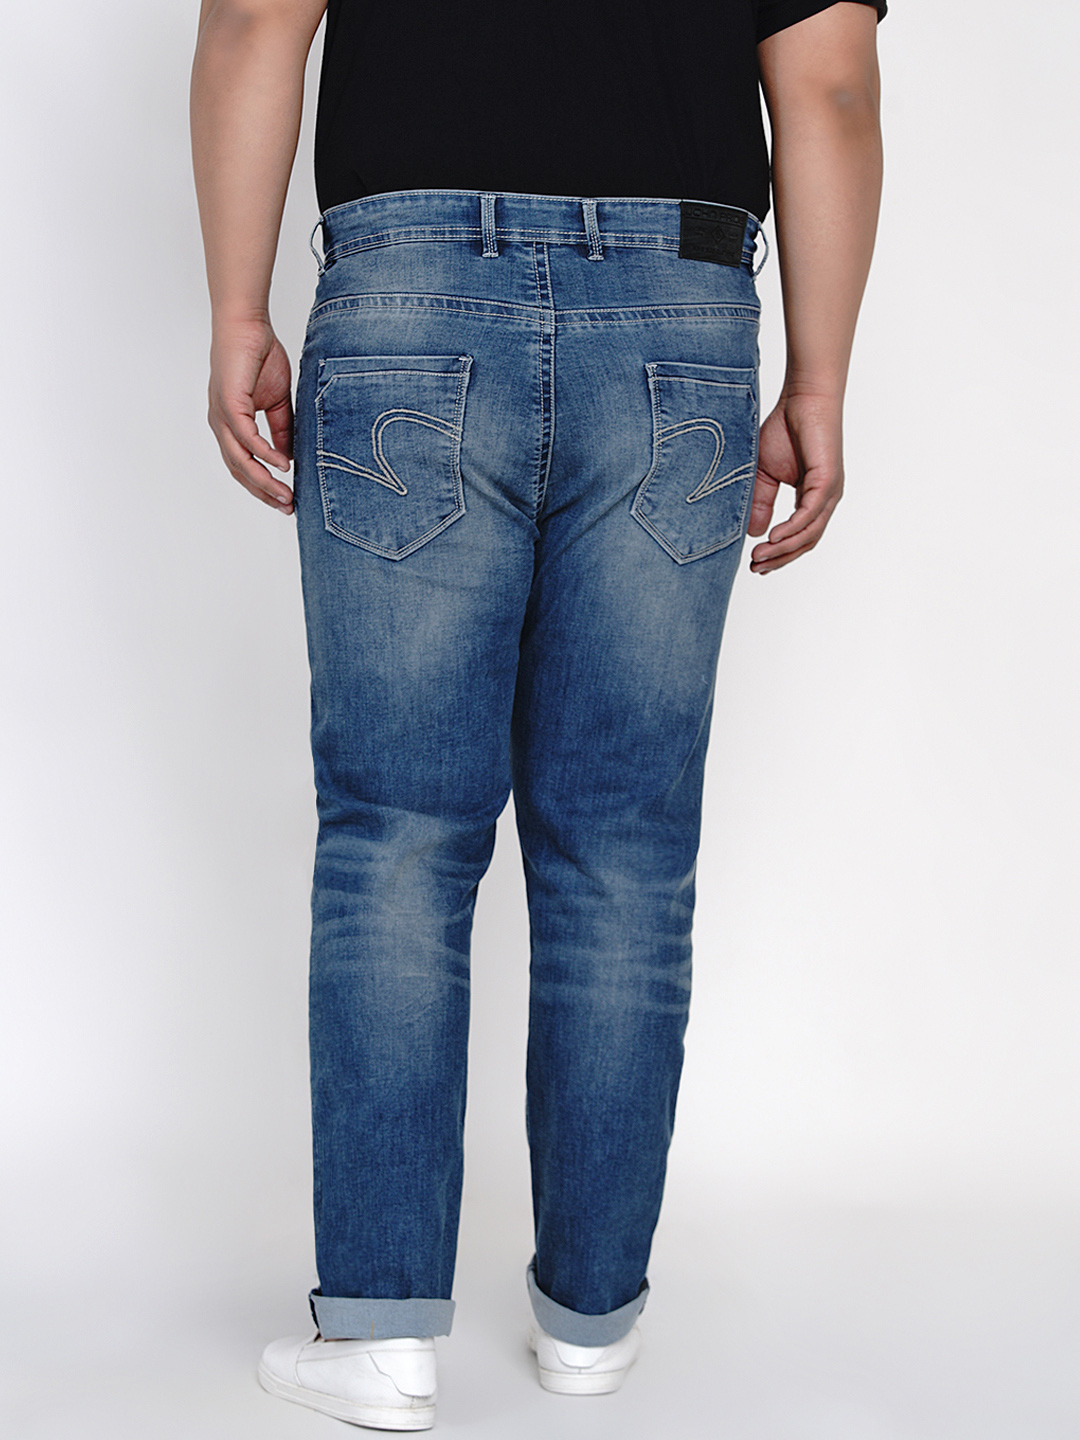 bottomwear/jeans/JPJ12117/jpj12117-5.jpg